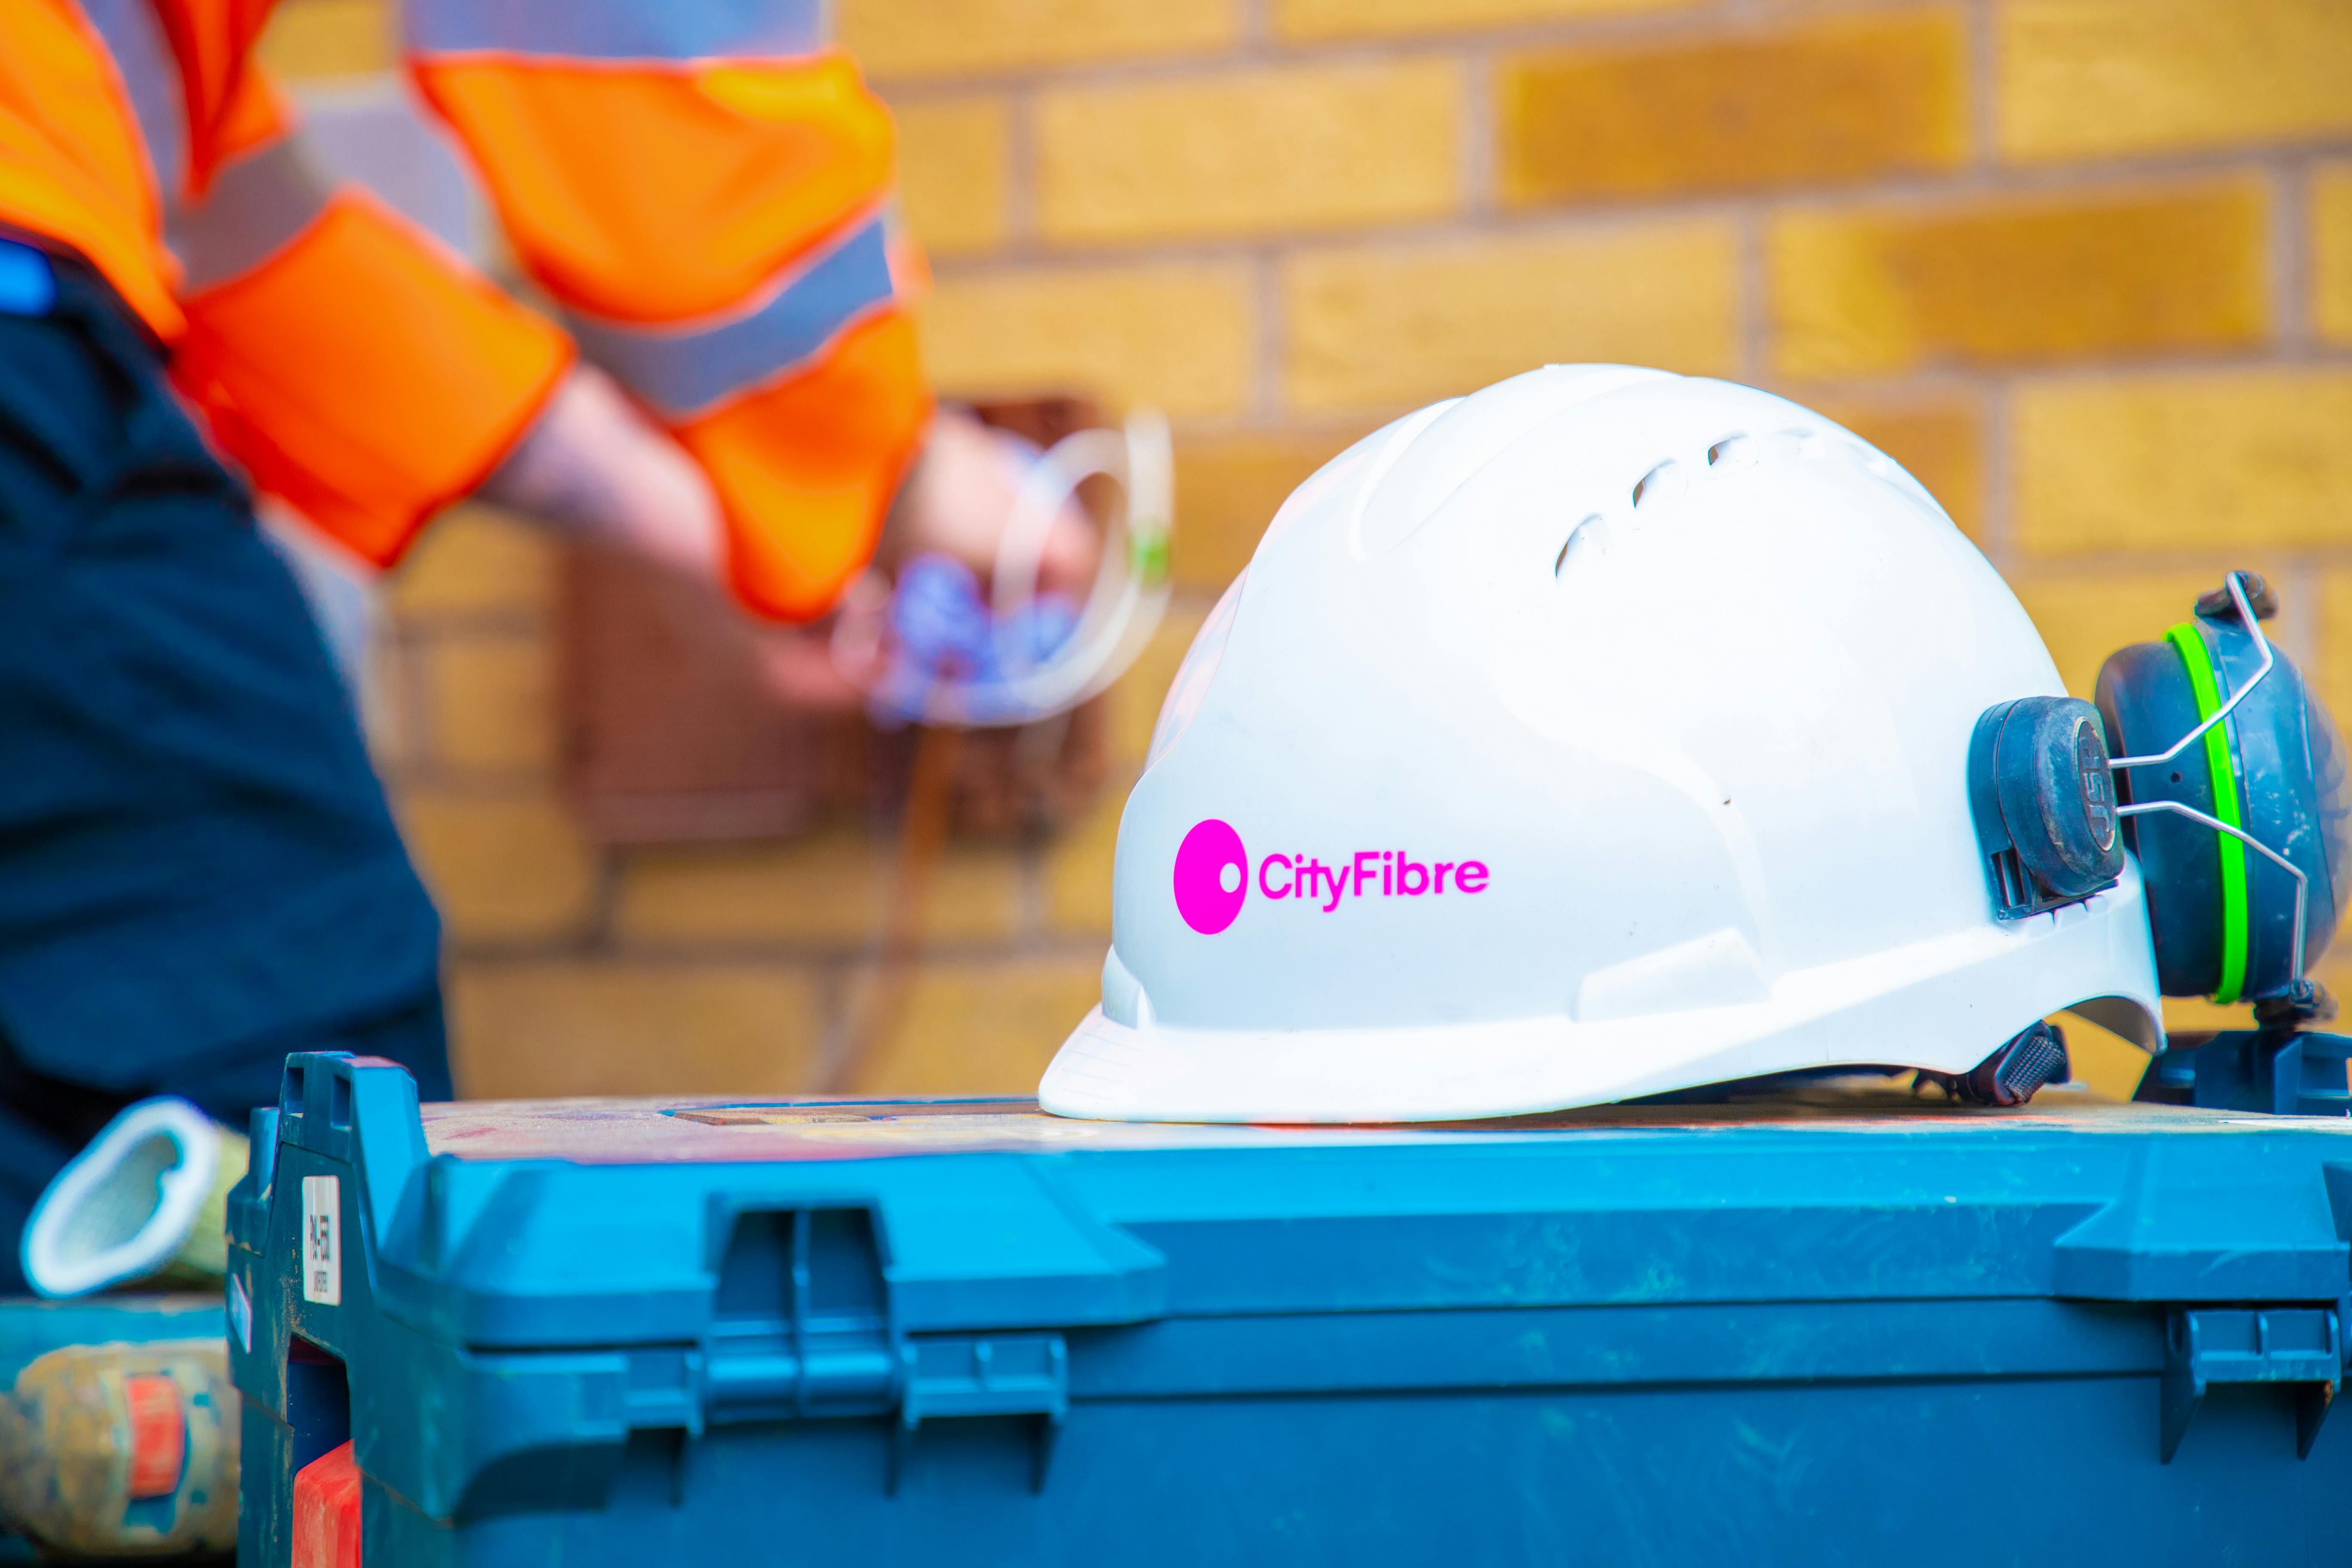 Casco de ingeniero de fibra óptica con el logotipo de CityFibre